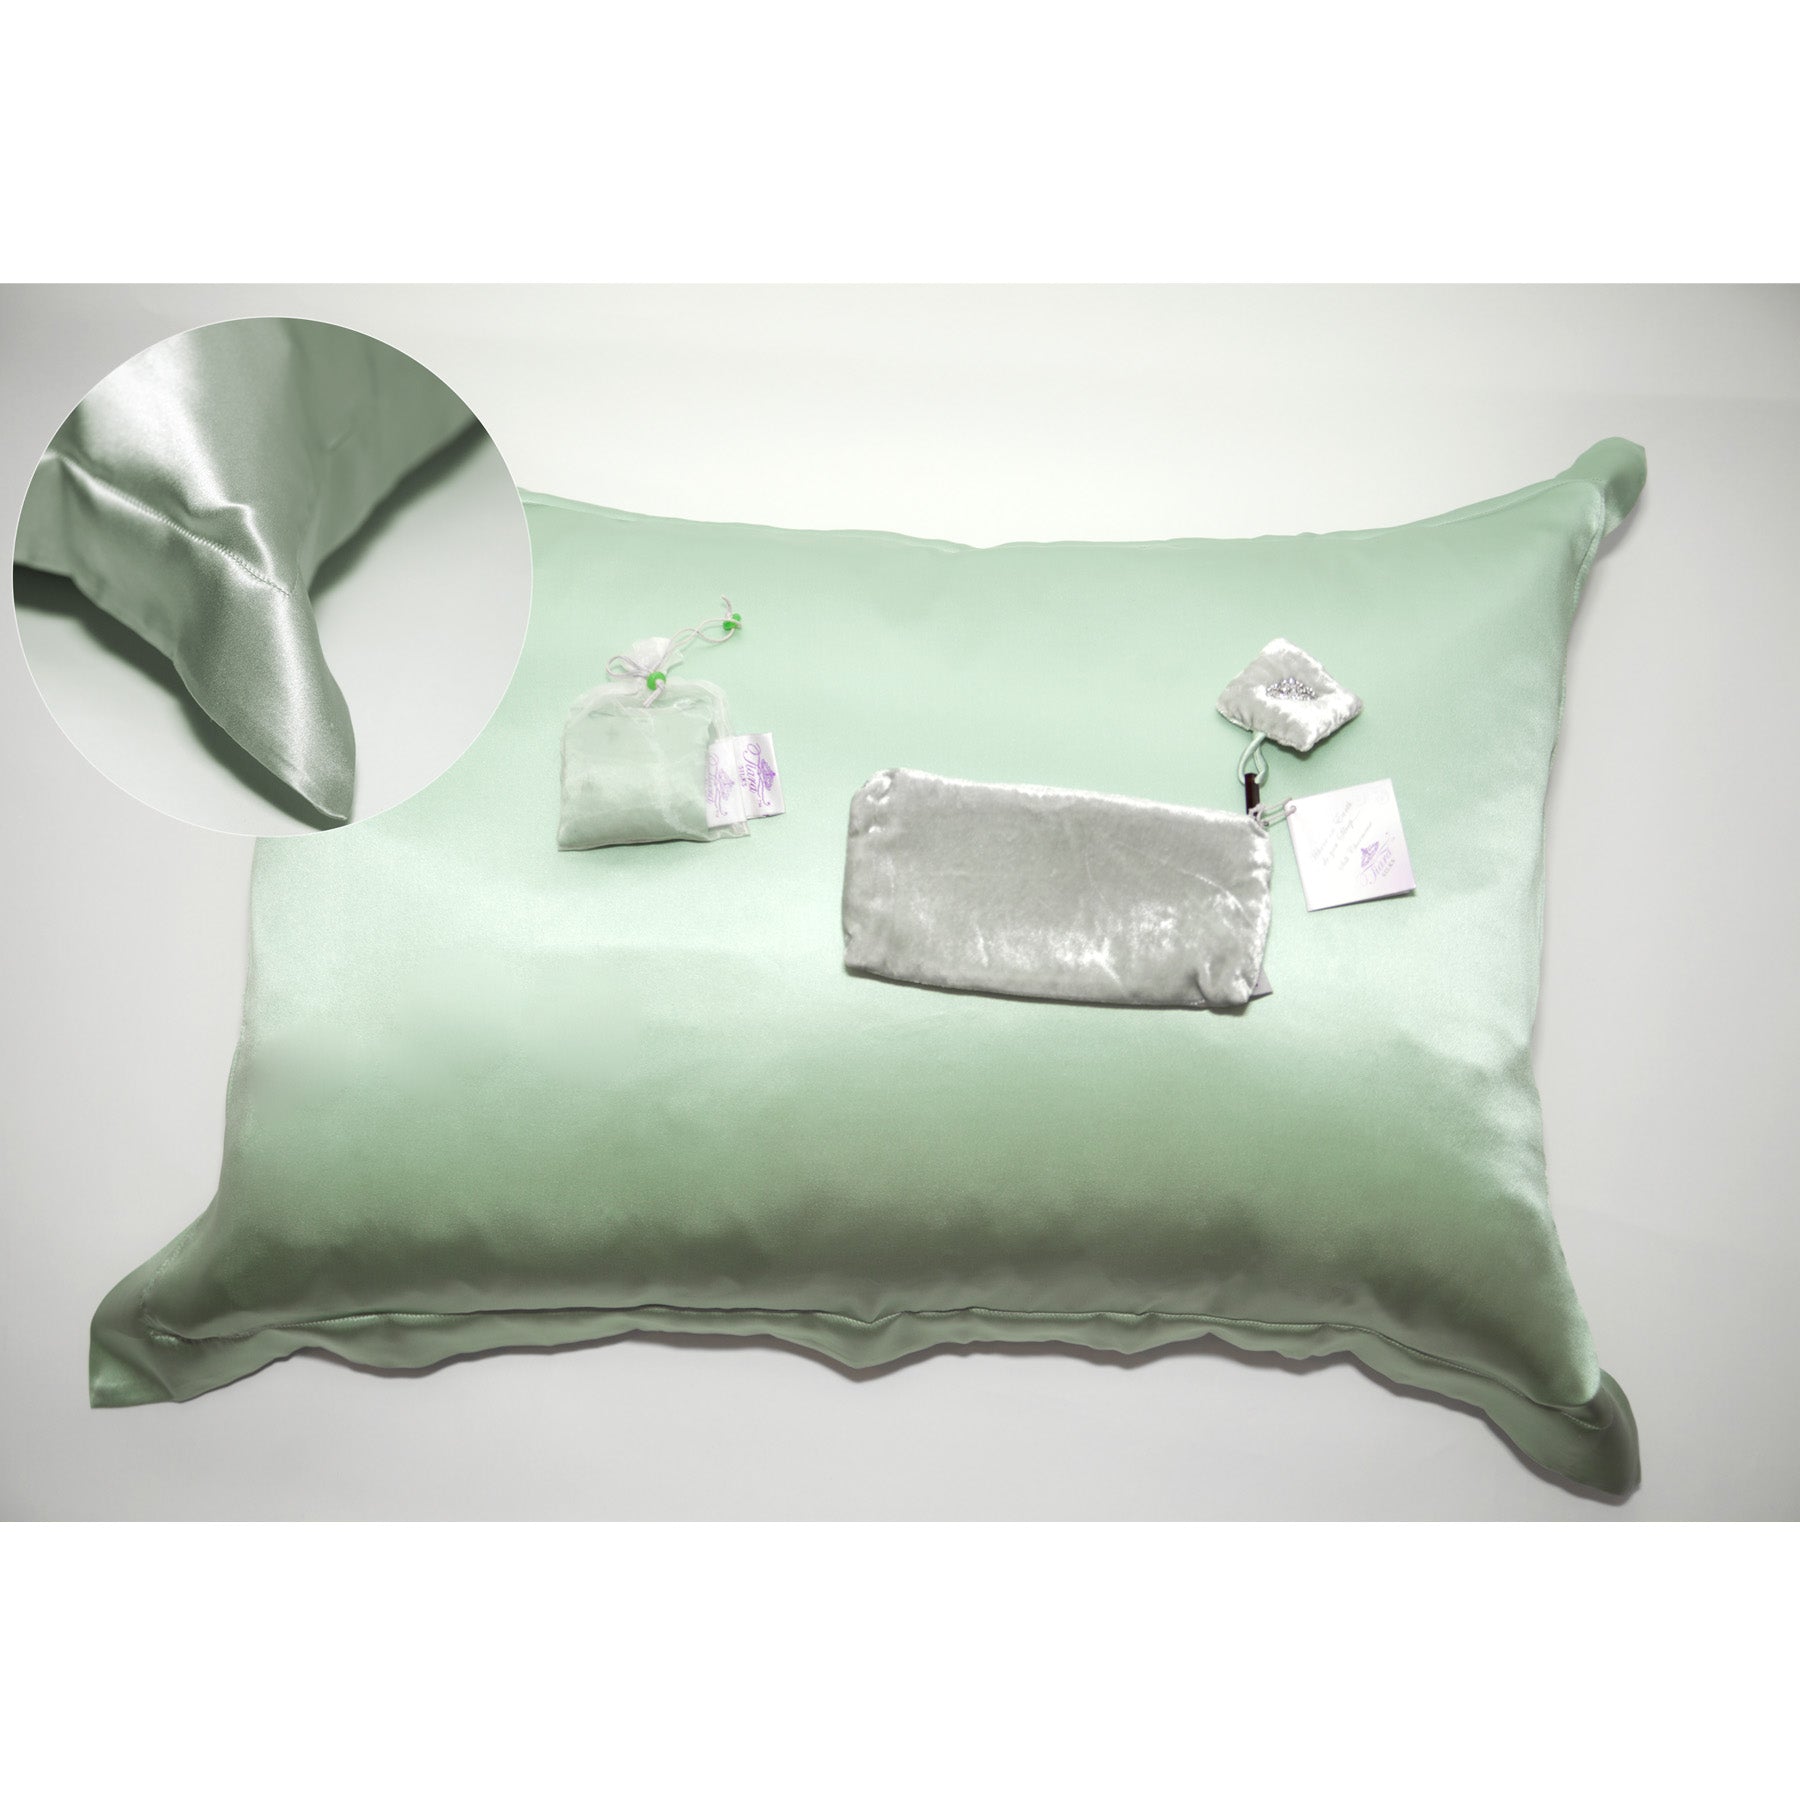 Tiara Silks® Aromatherapy Silk Pillowcase with Zipper Velvet Travel Bag